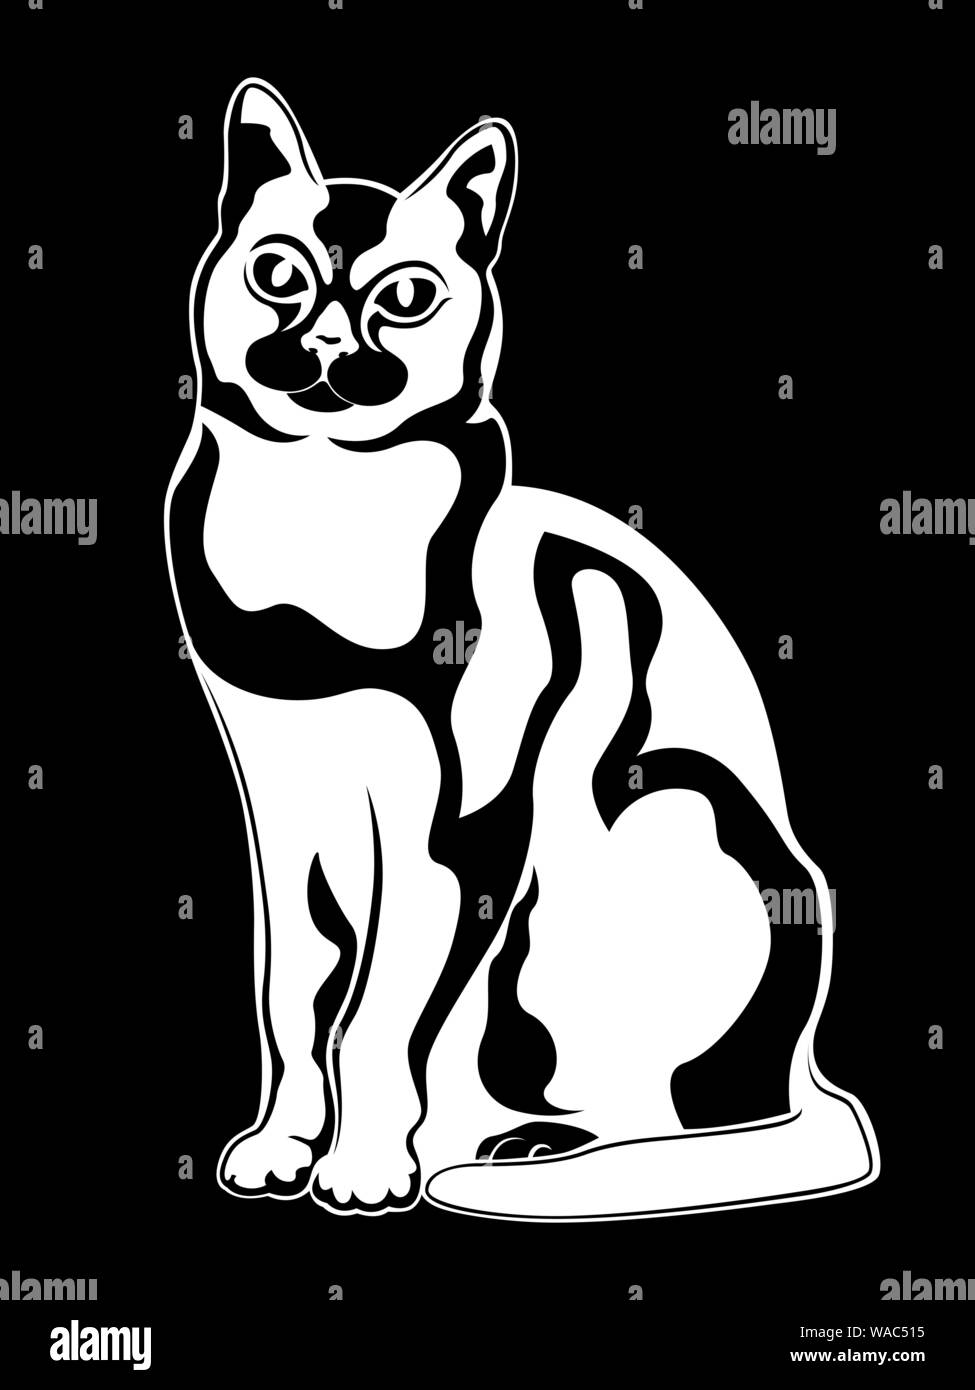 Abstrakte Katze Schablone, schwarz Vektor Handzeichnung auf weißem Hintergrund Stock Vektor